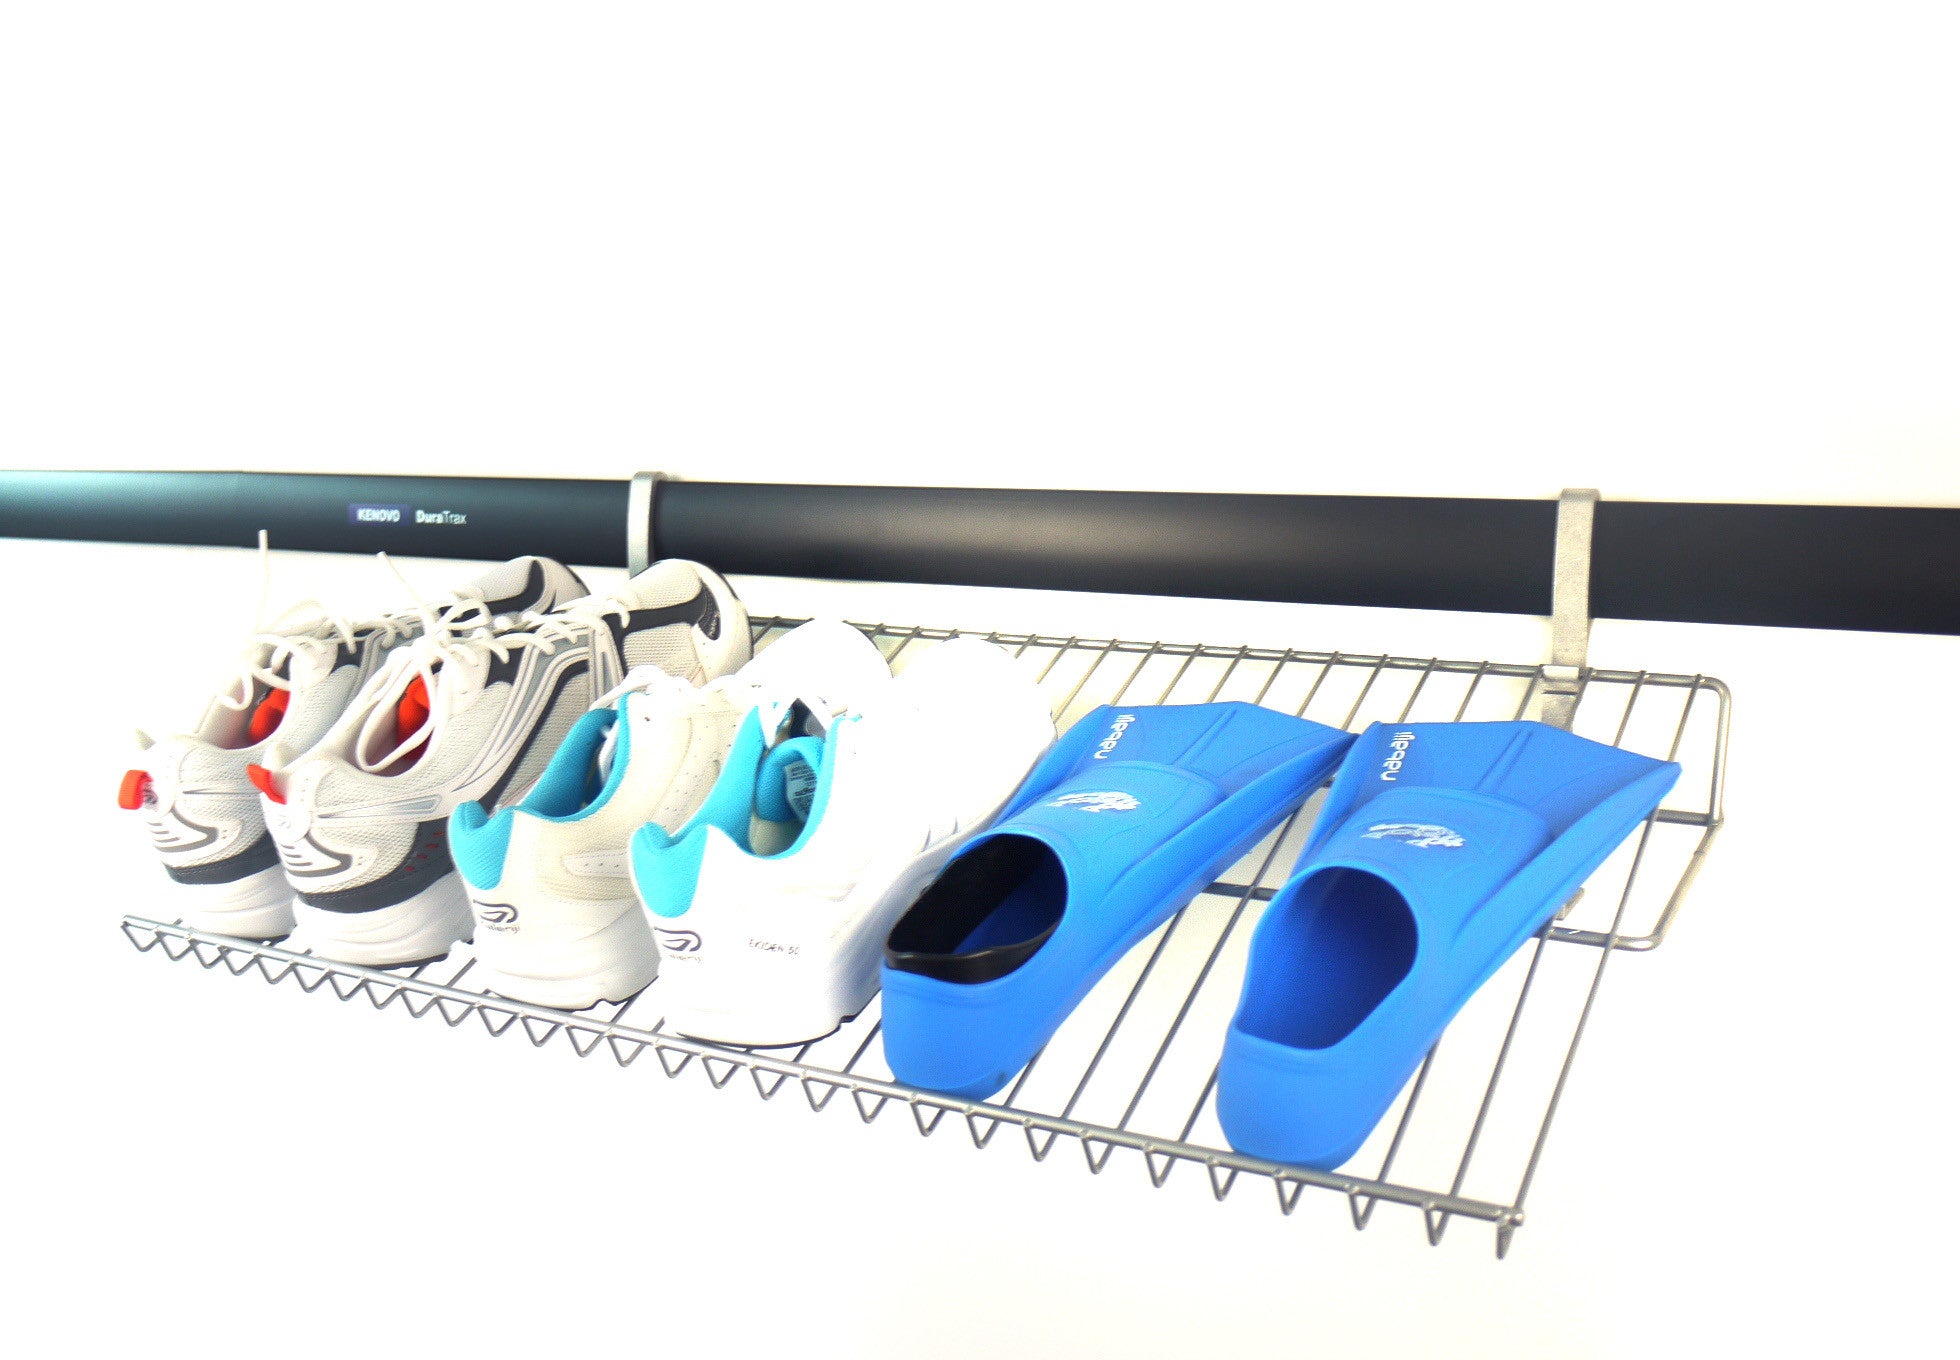 horizontal shoe rack - 700mm, wall mounted shoe rack